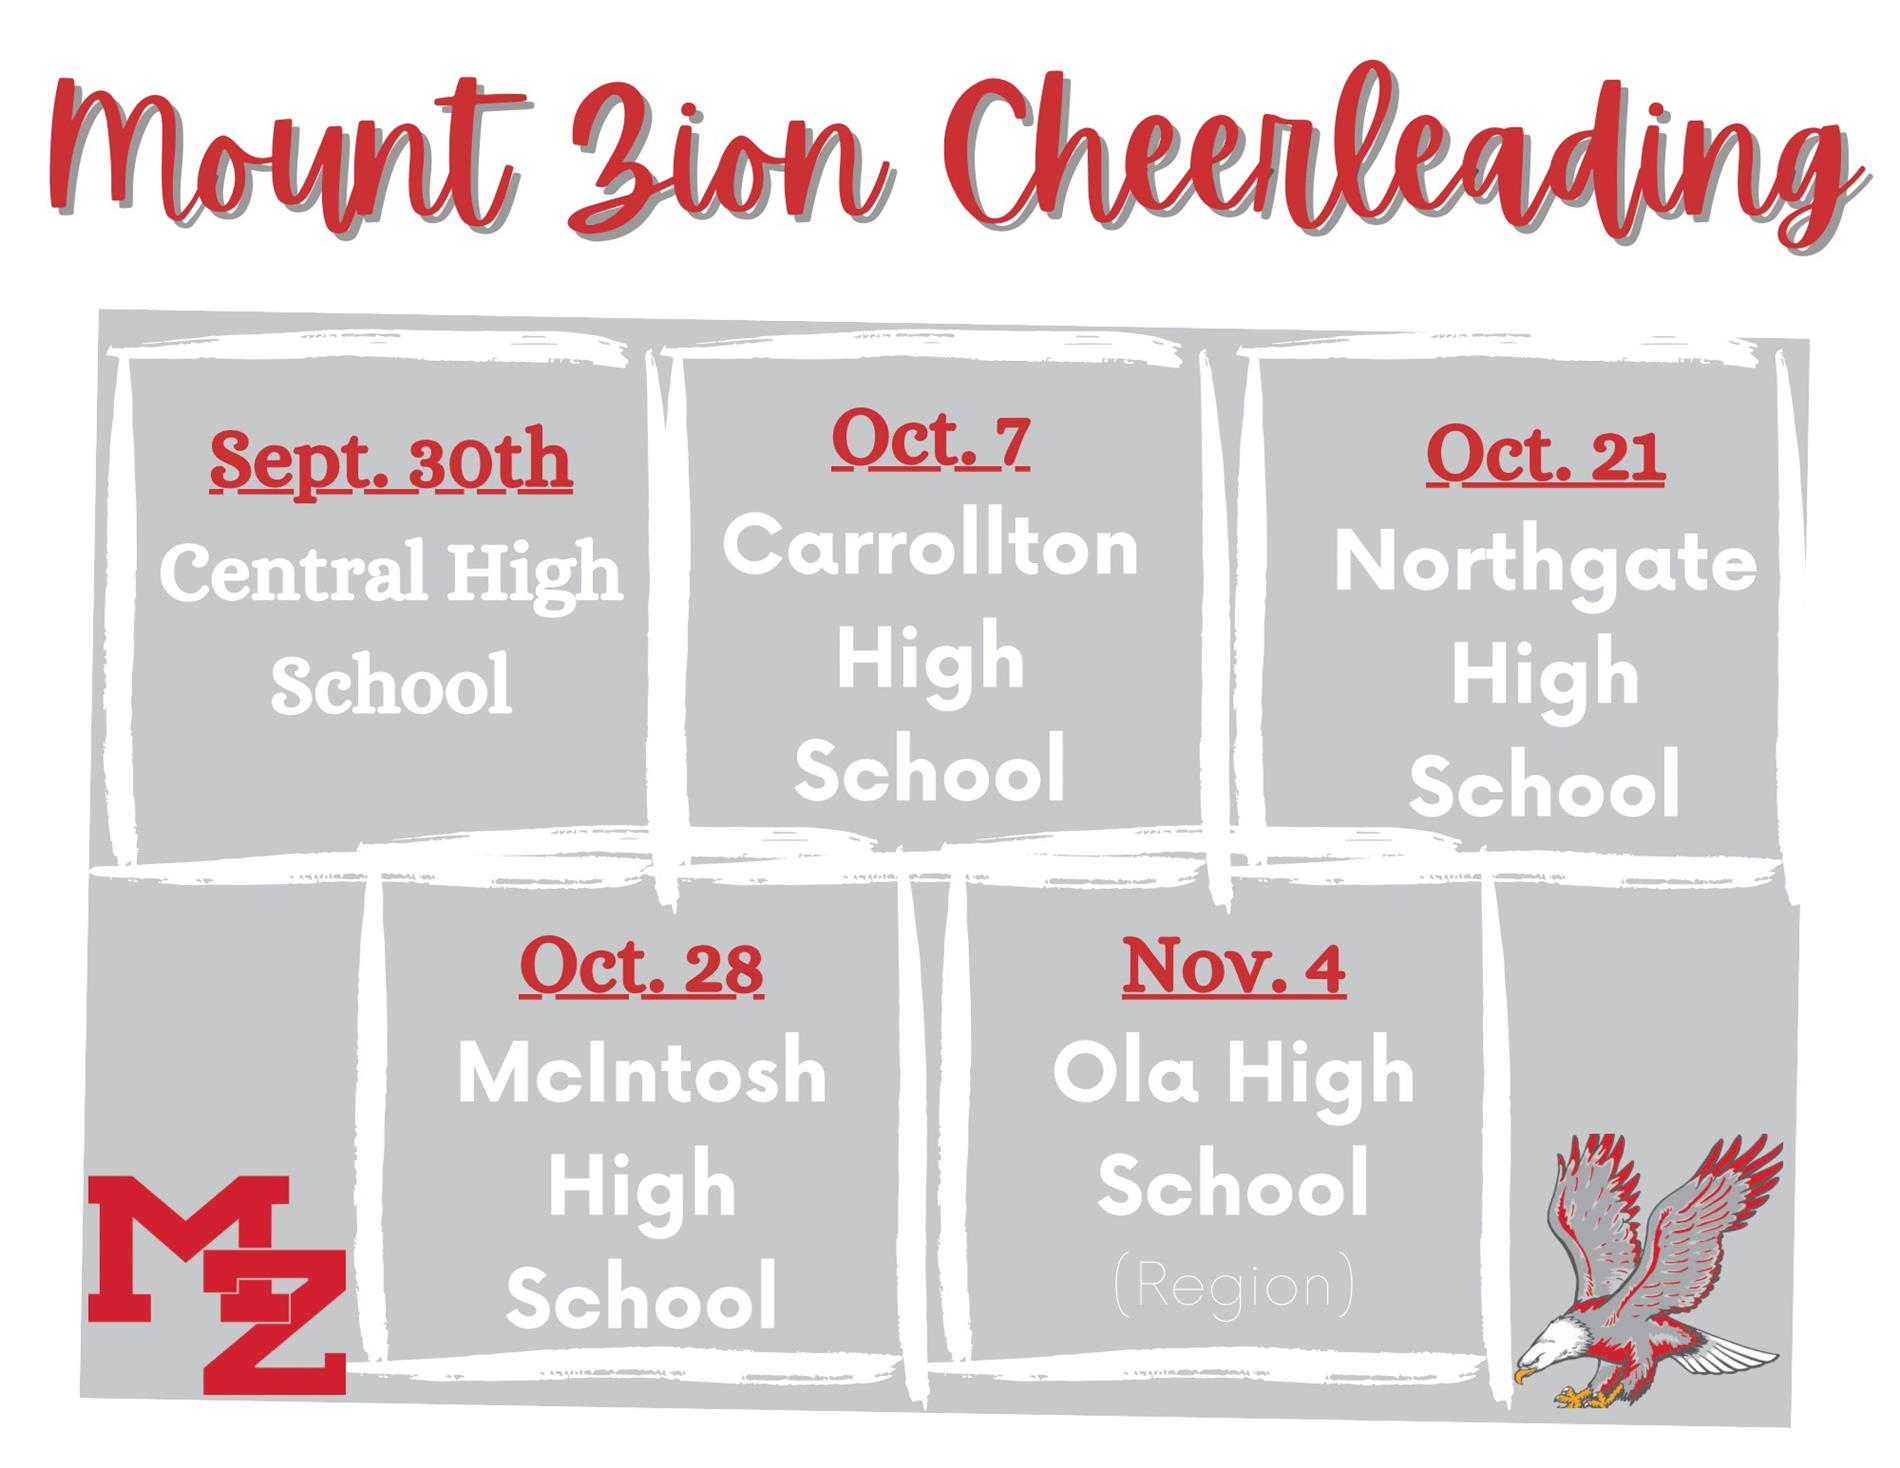 Cheerleading schedule 2023